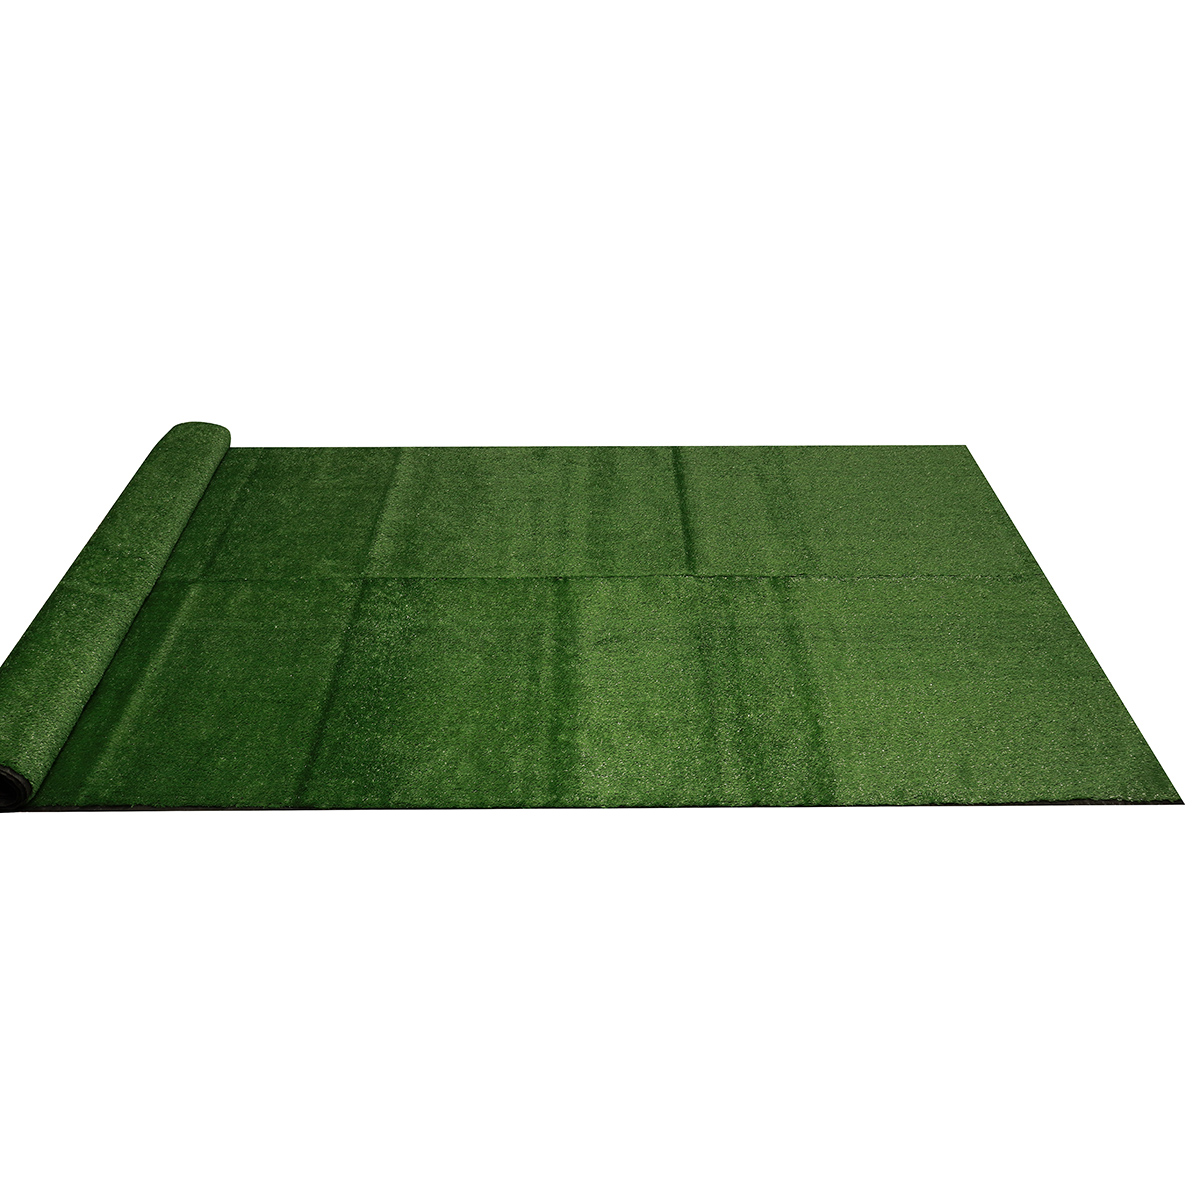 15mm-Artificial-Grass-Mat-Lawn-Synthetic-Green-Yard-Garden-InOutdoor-1715021-4